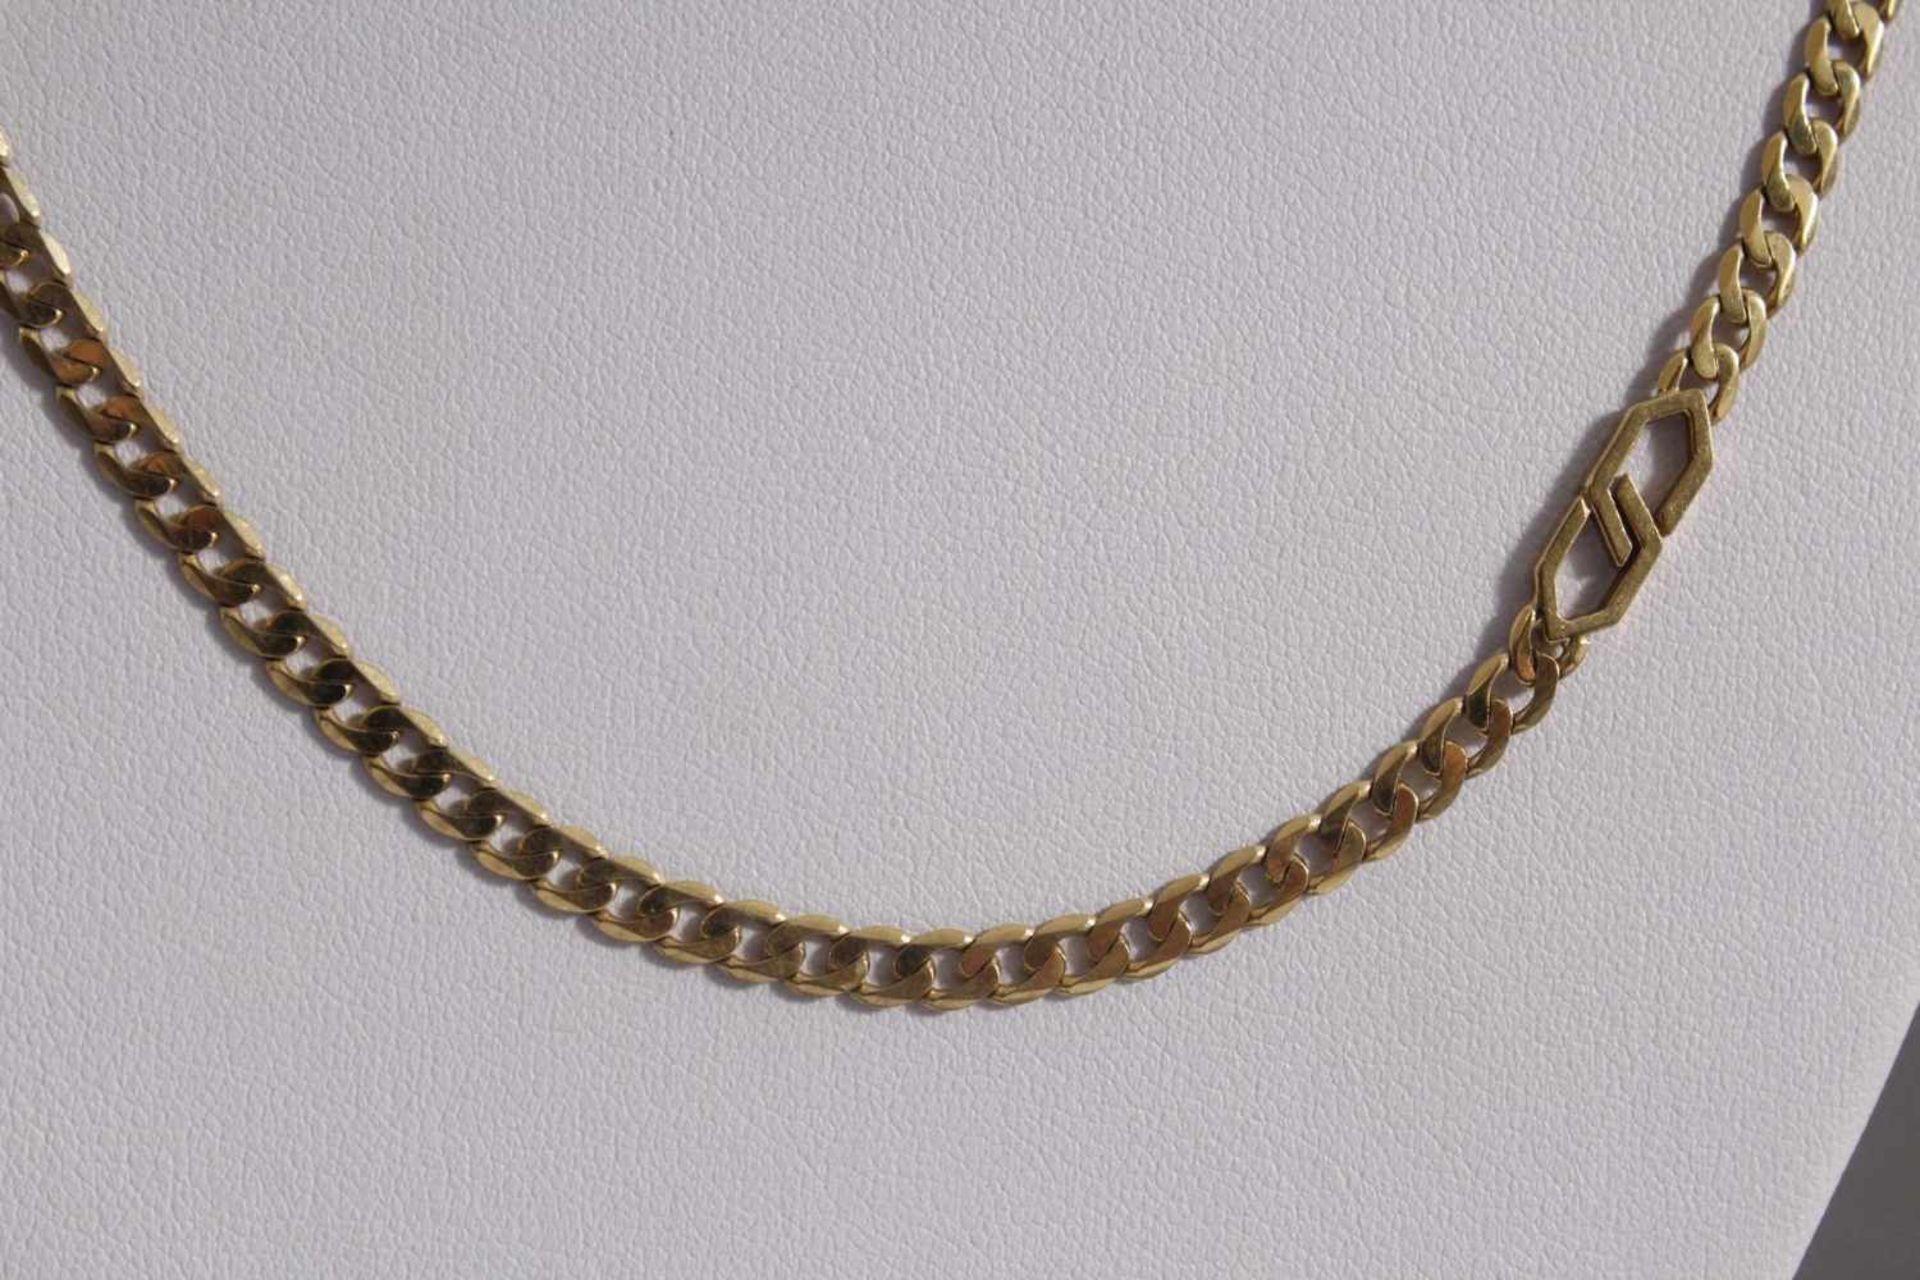 Halskette aus 8 Karat GelbgoldGliederkette, an der Schließe punziert 333, Länge 81 cm, 16 g.- - - - Bild 2 aus 3